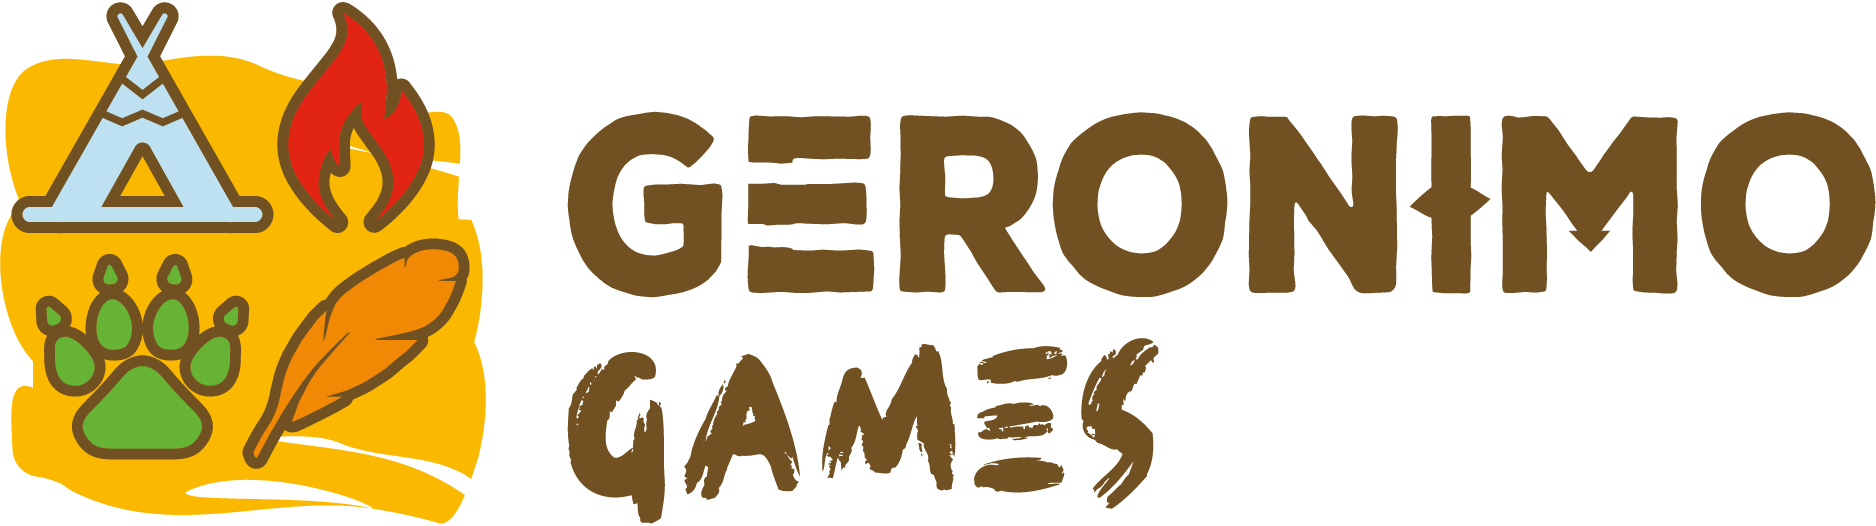 Geronimo Games